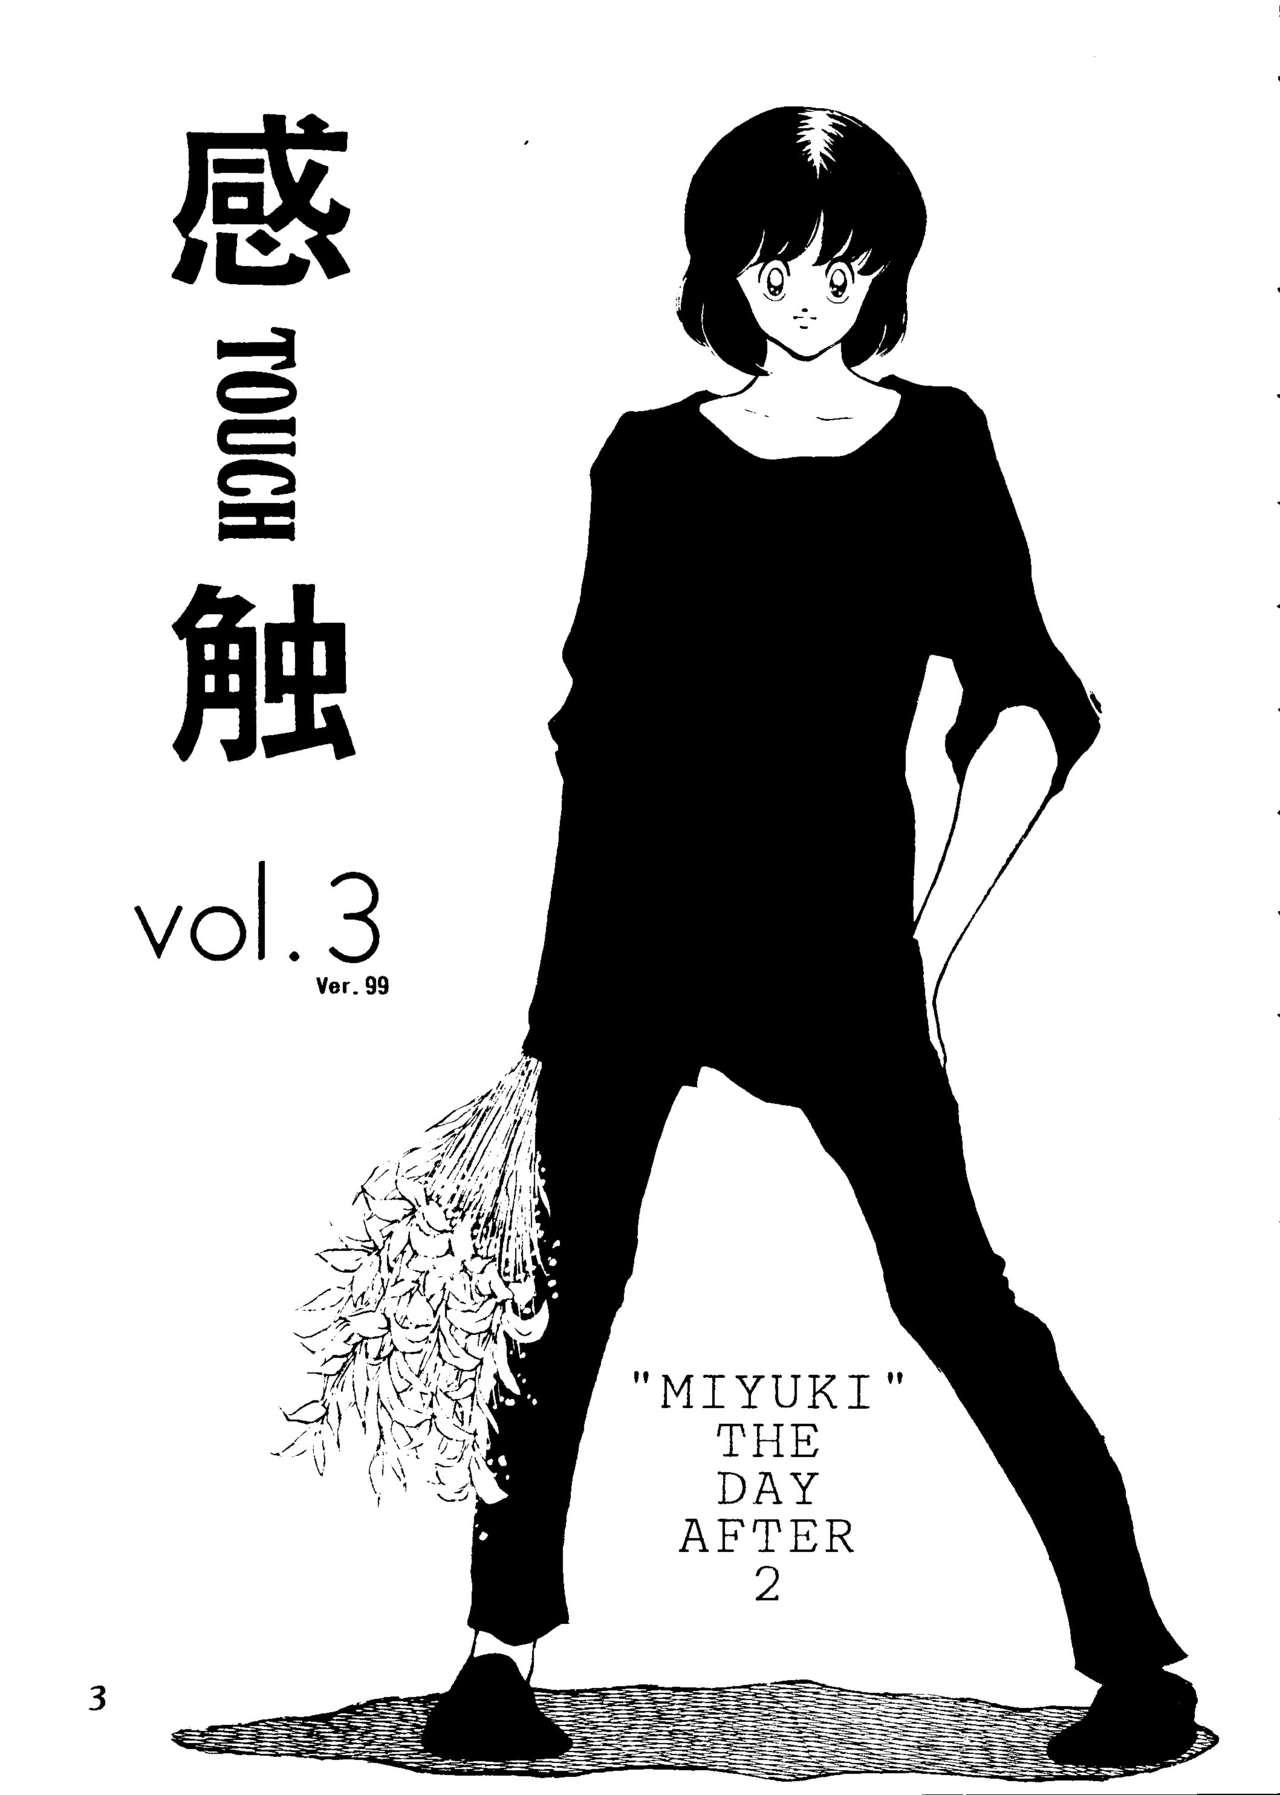 Brasileira Touch vol. 3 ver.99 - Miyuki Teen Hardcore - Page 2